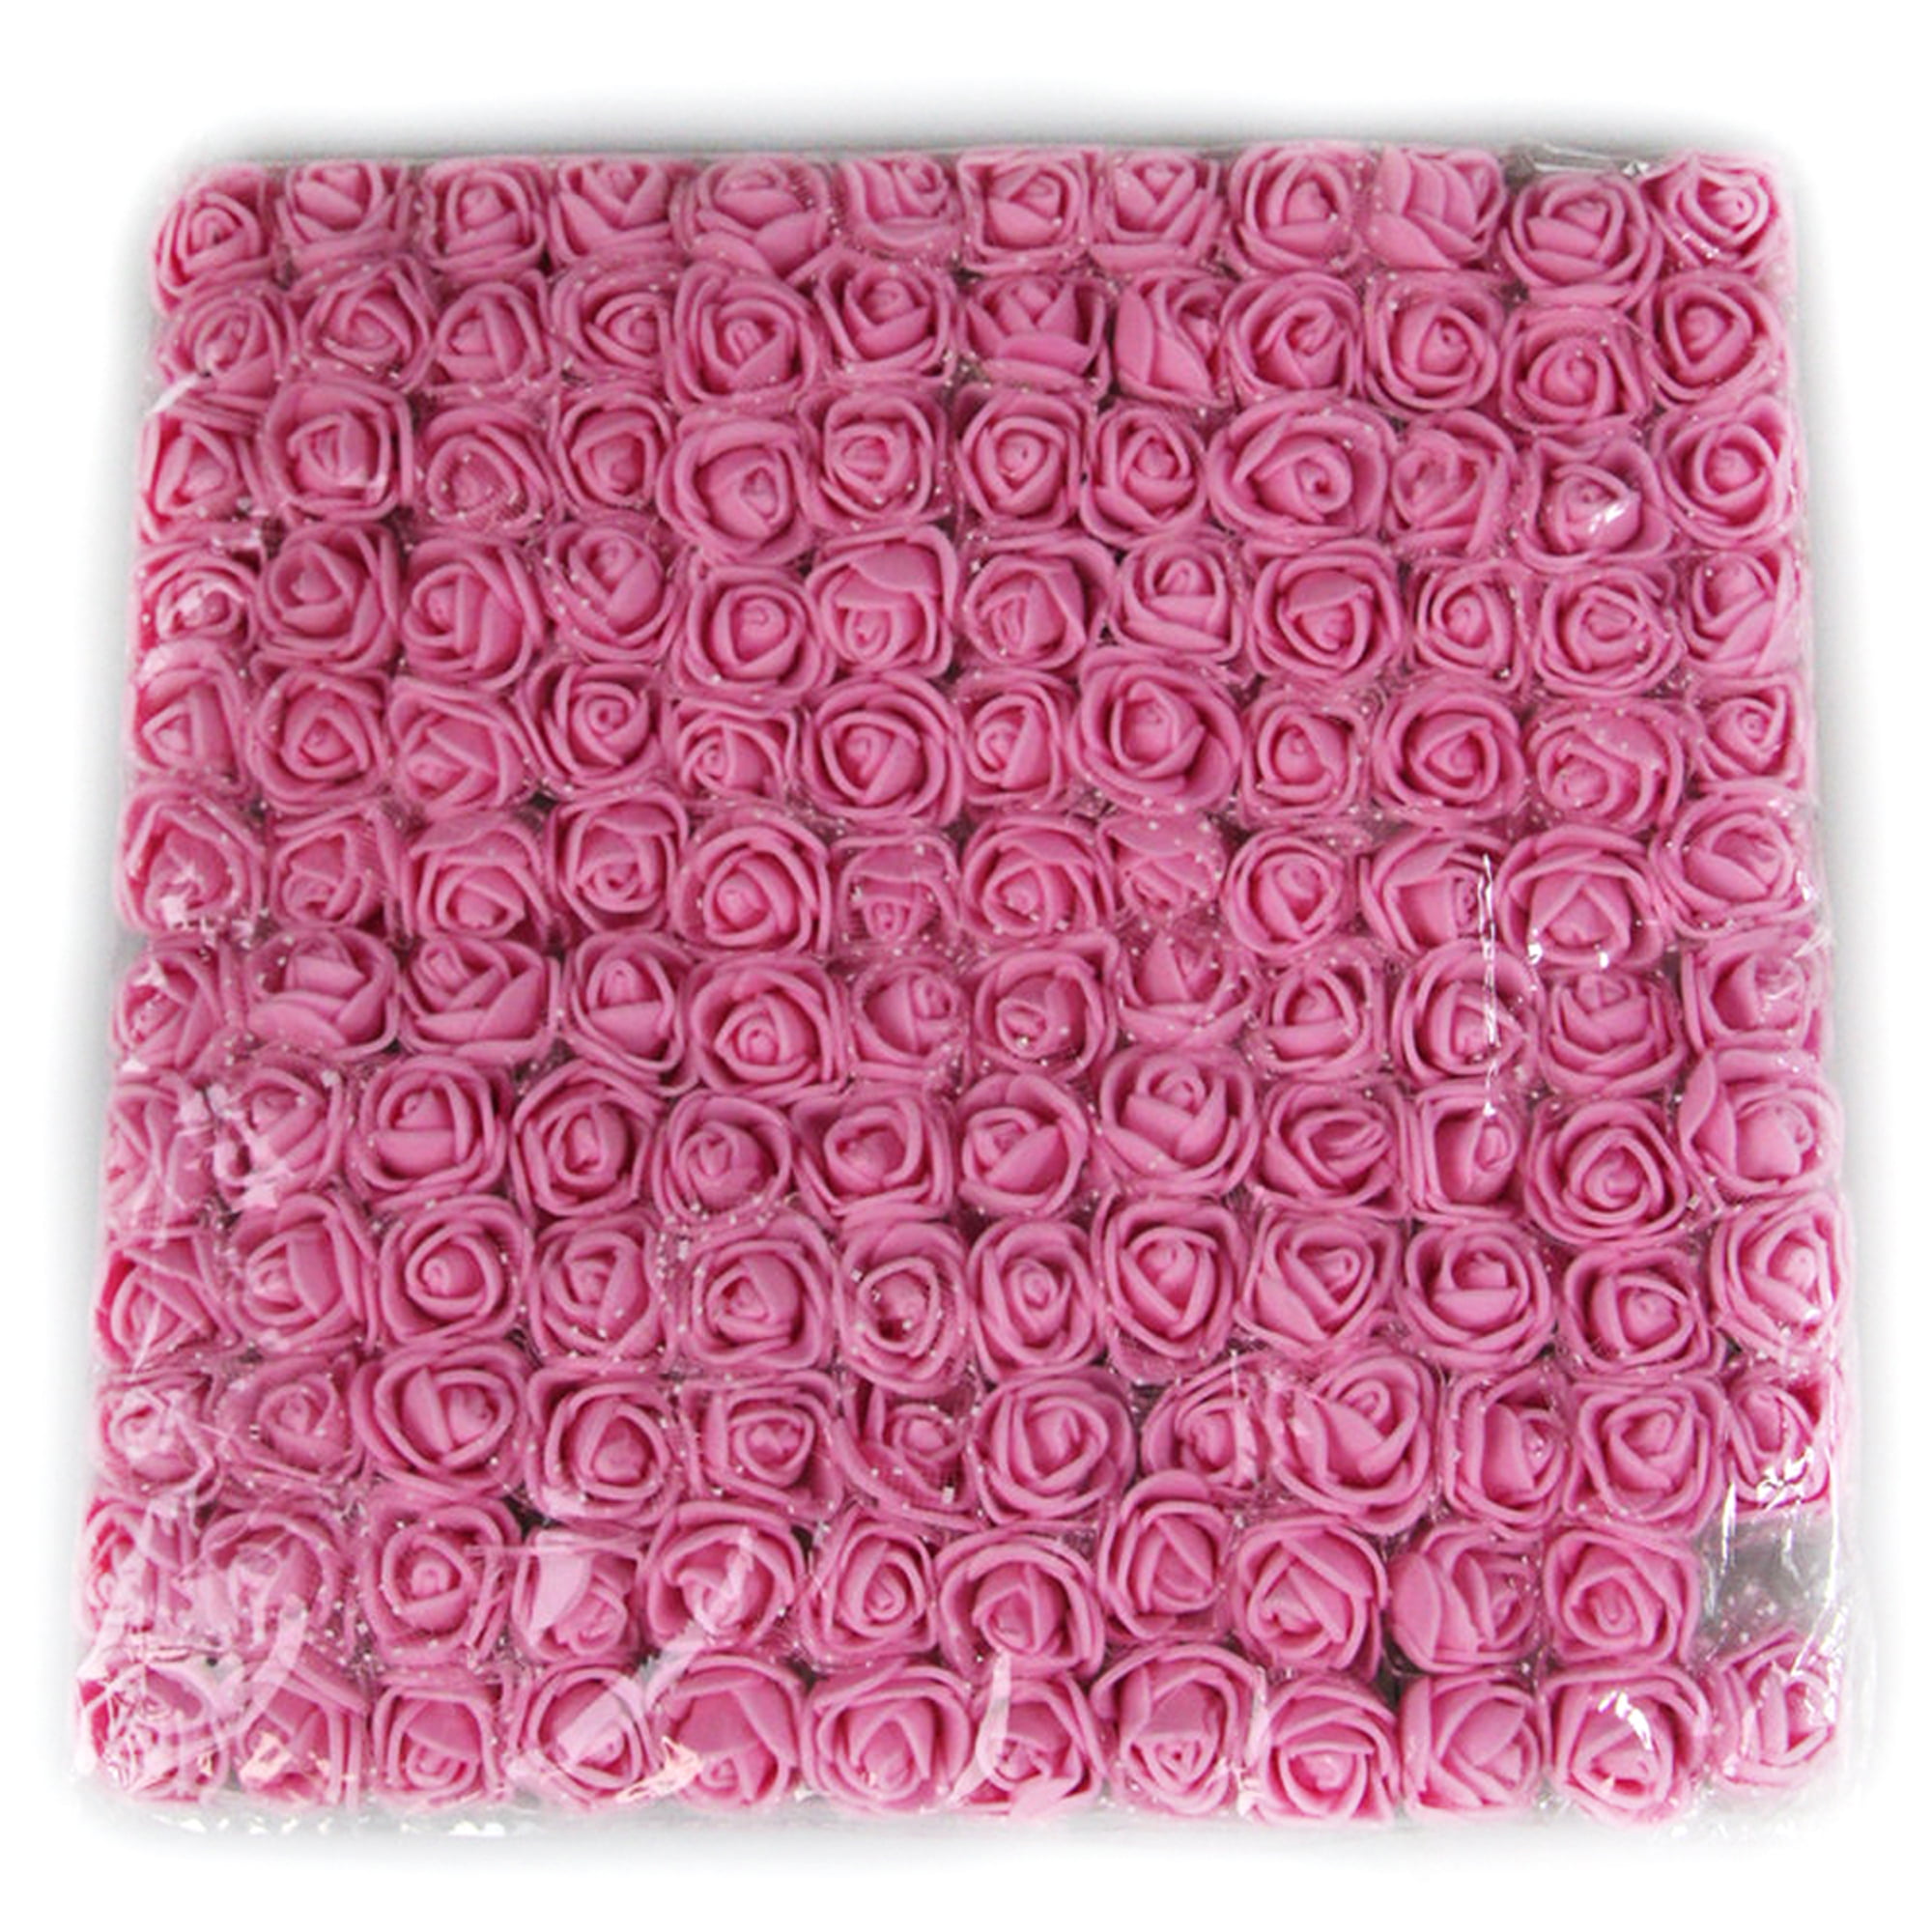 144Pcs Mini Artificial Flowers Foam Rose Heads Home Wedding Party Decor Bouquet